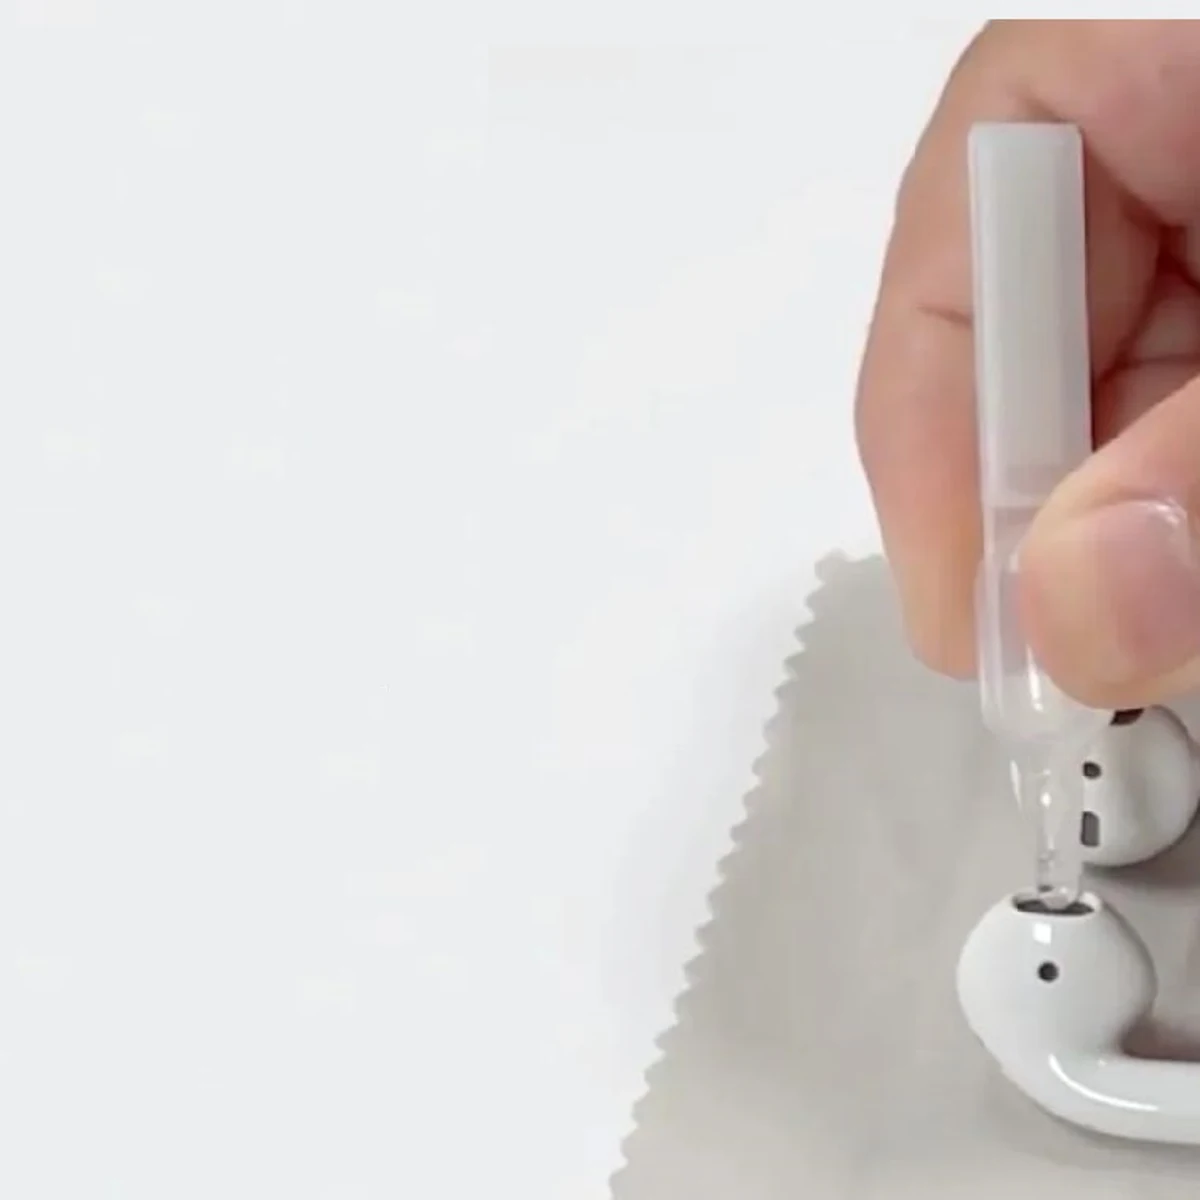 Belkin presenta el kit de limpieza definitivo para los AirPods de Apple